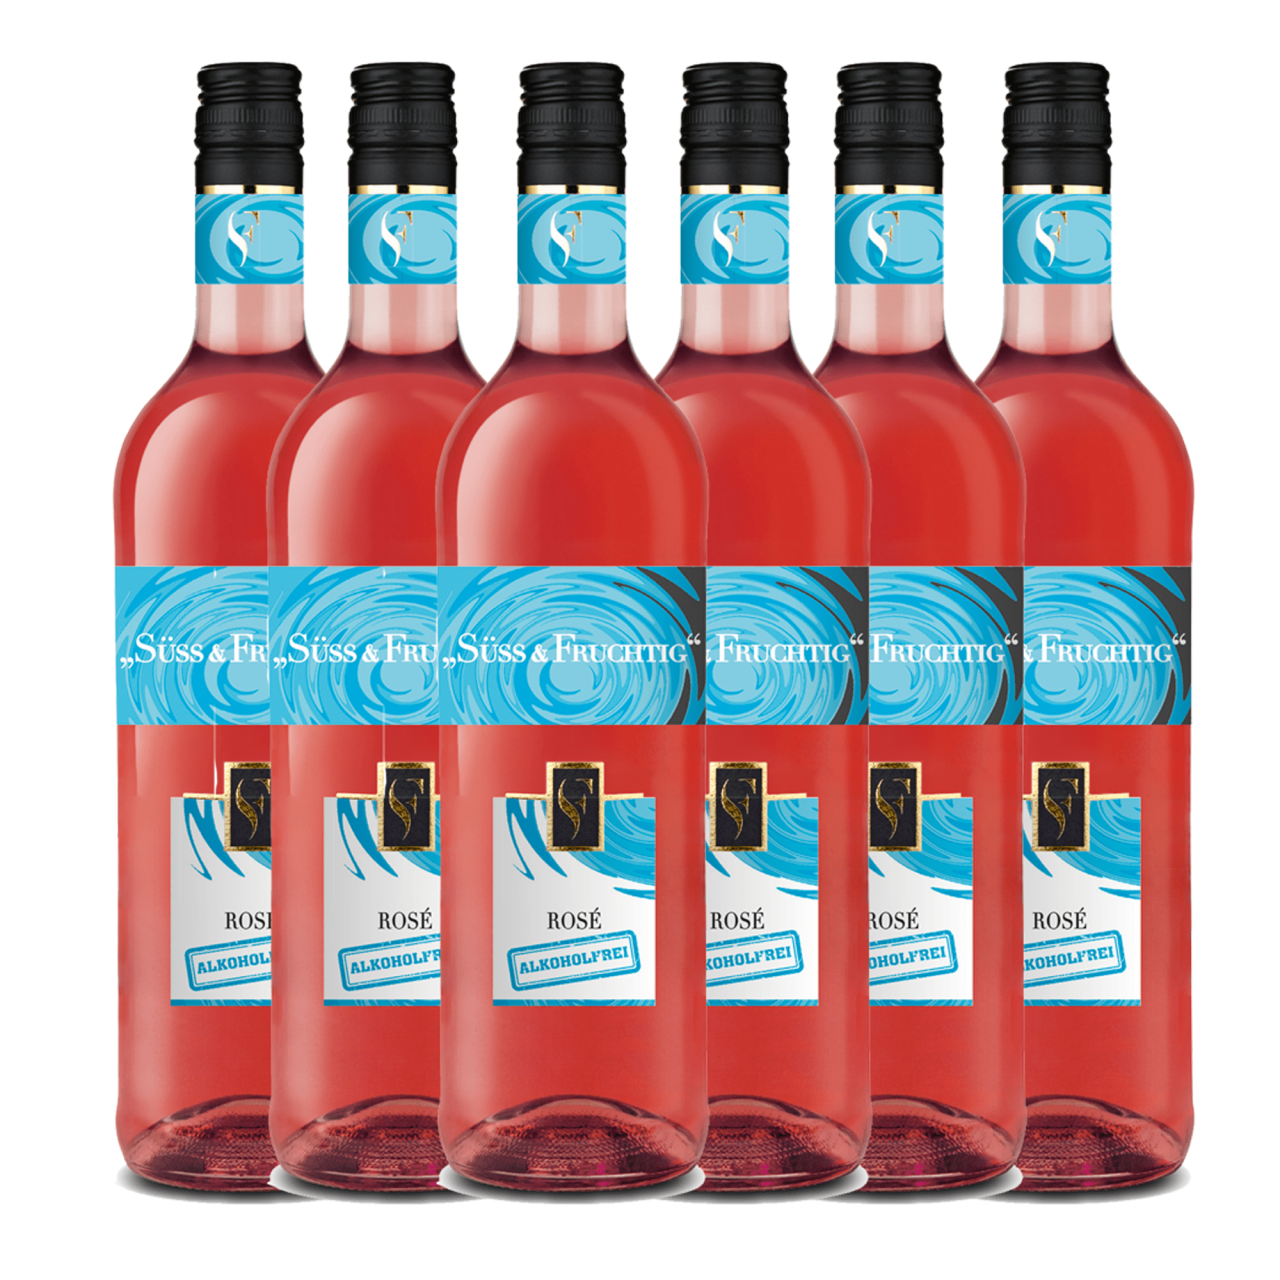 Süss & Fruchtig Rosé Alkoholfrei 6er Karton